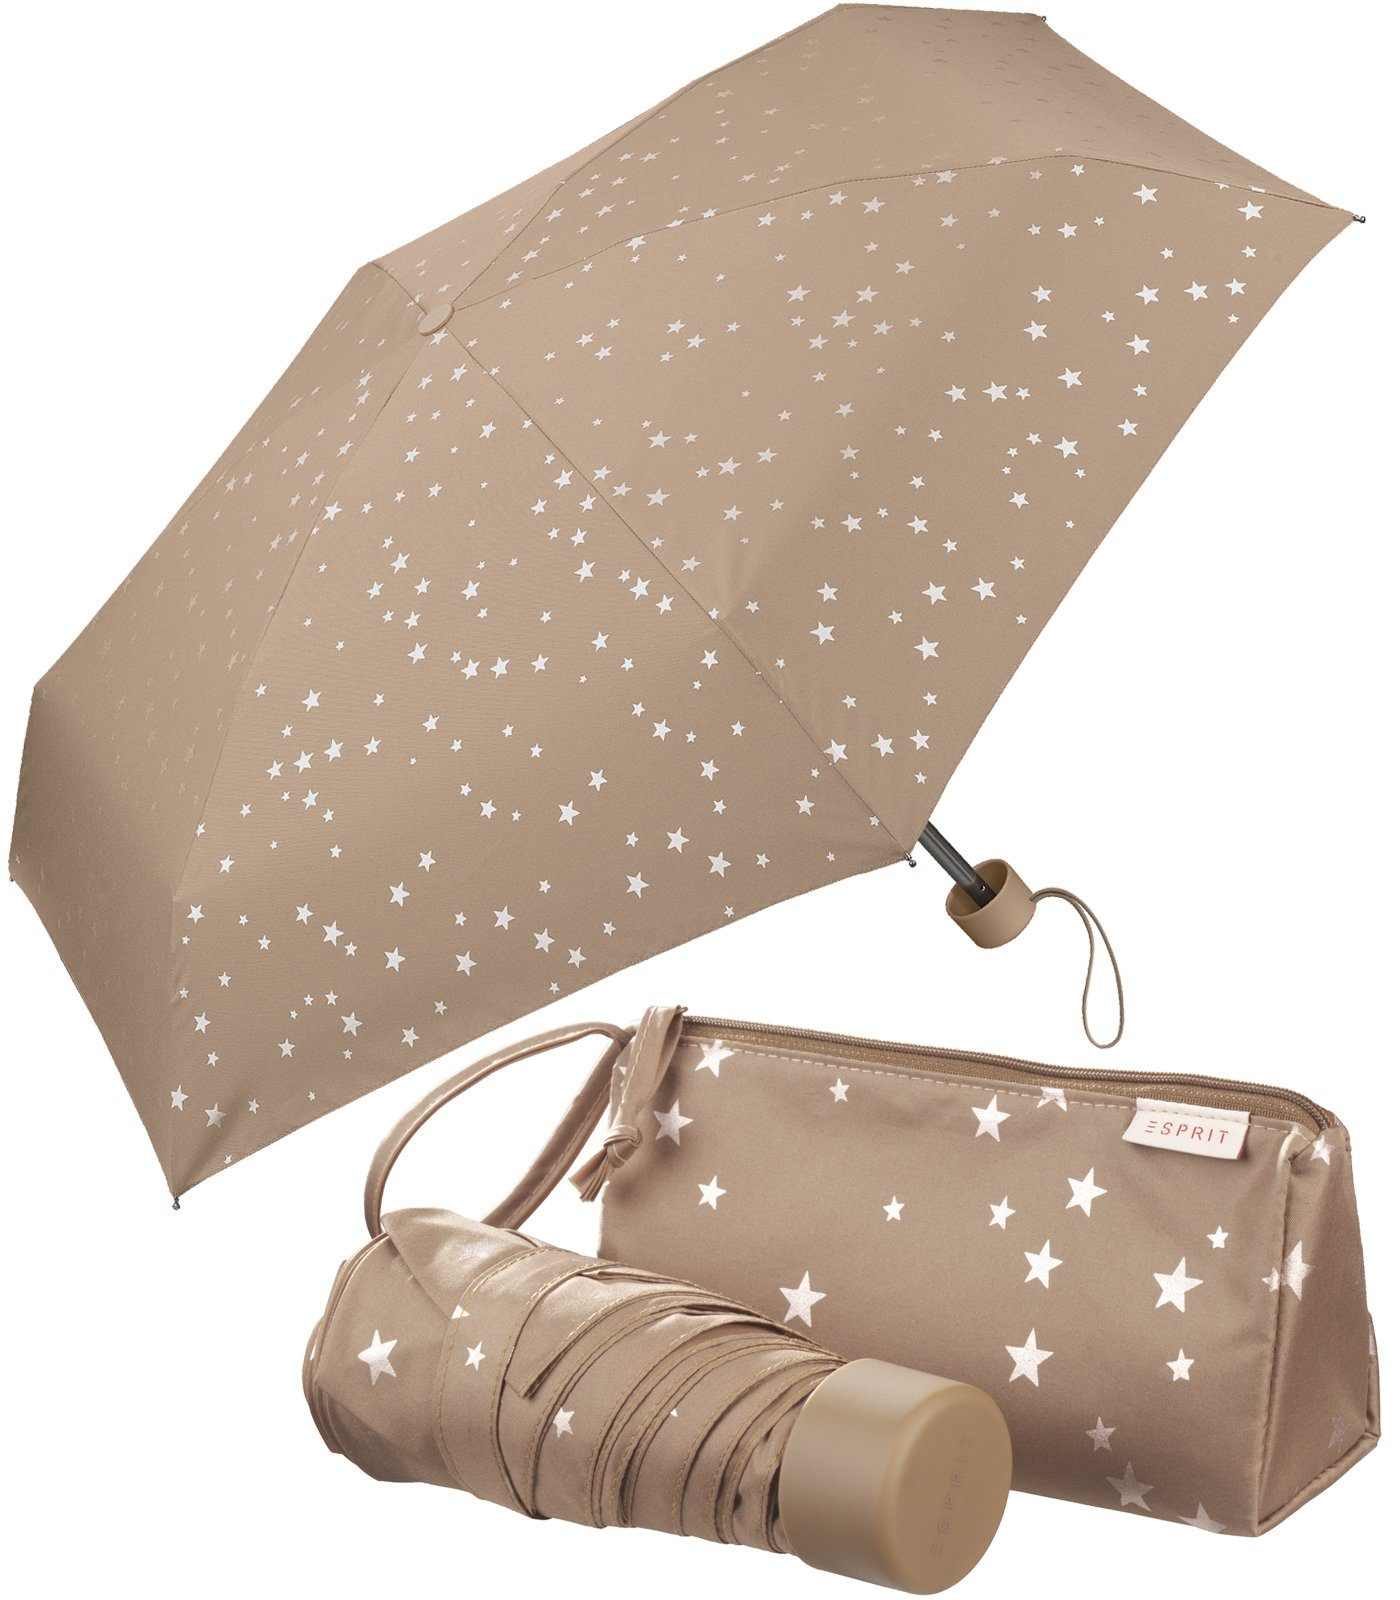 Mini-Schirm kleinen anderer praktischen, zur Aufbewahrung des Schirms oder im Esprit Dinge Taschenregenschirm Täschchen,